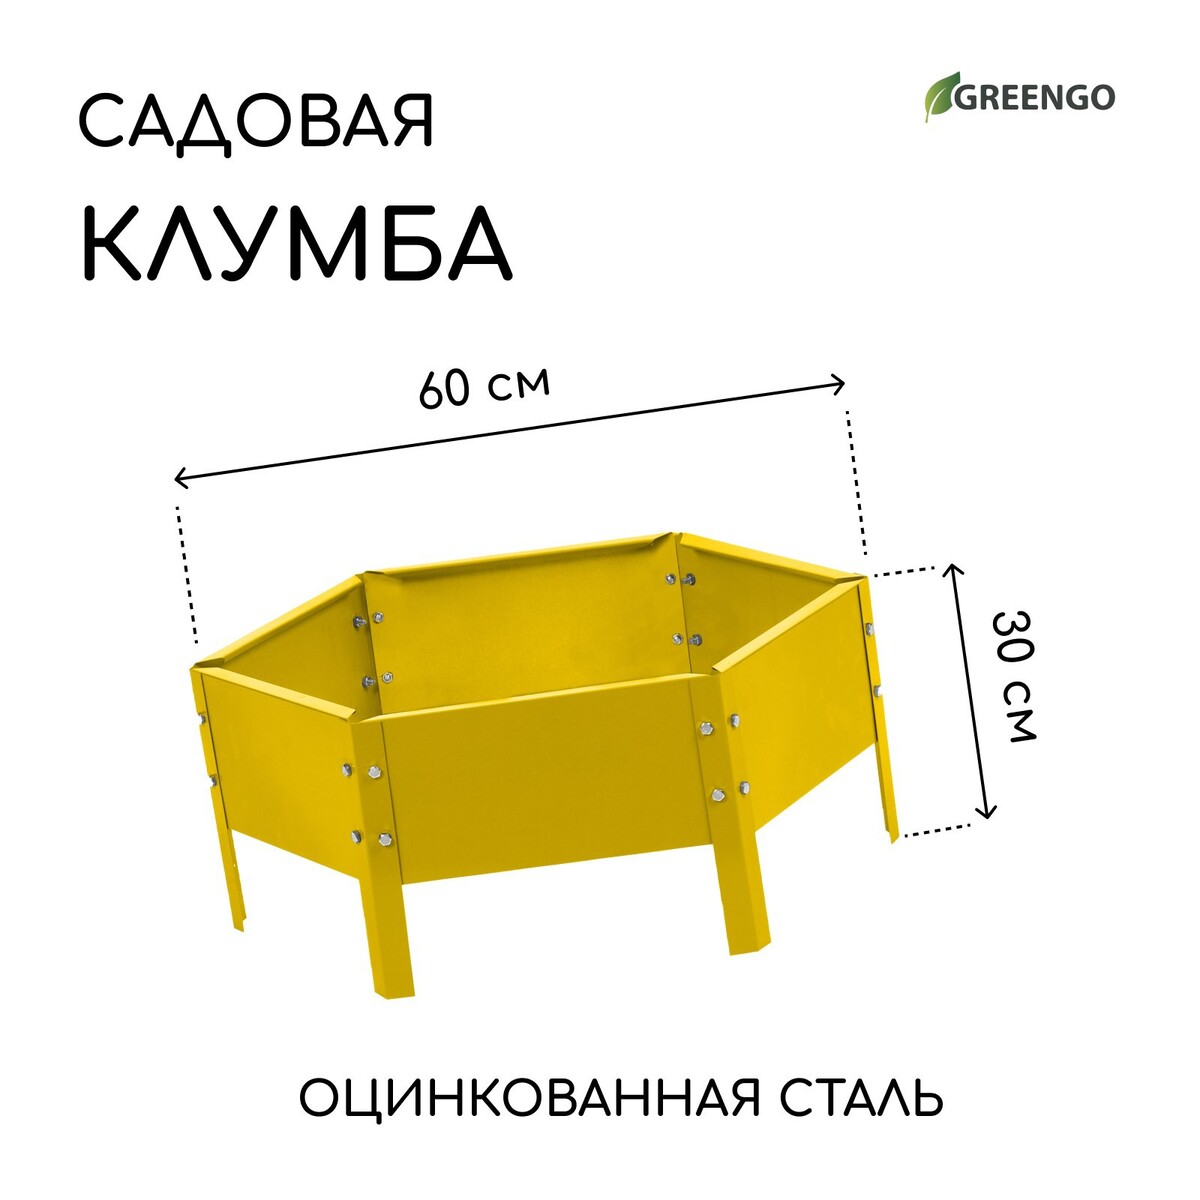 Клумба оцинкованная, d = 60 см, h = 15 см, желтая, greengo клумба оцинкованная d 60 см h 15 см сиреневый greengo